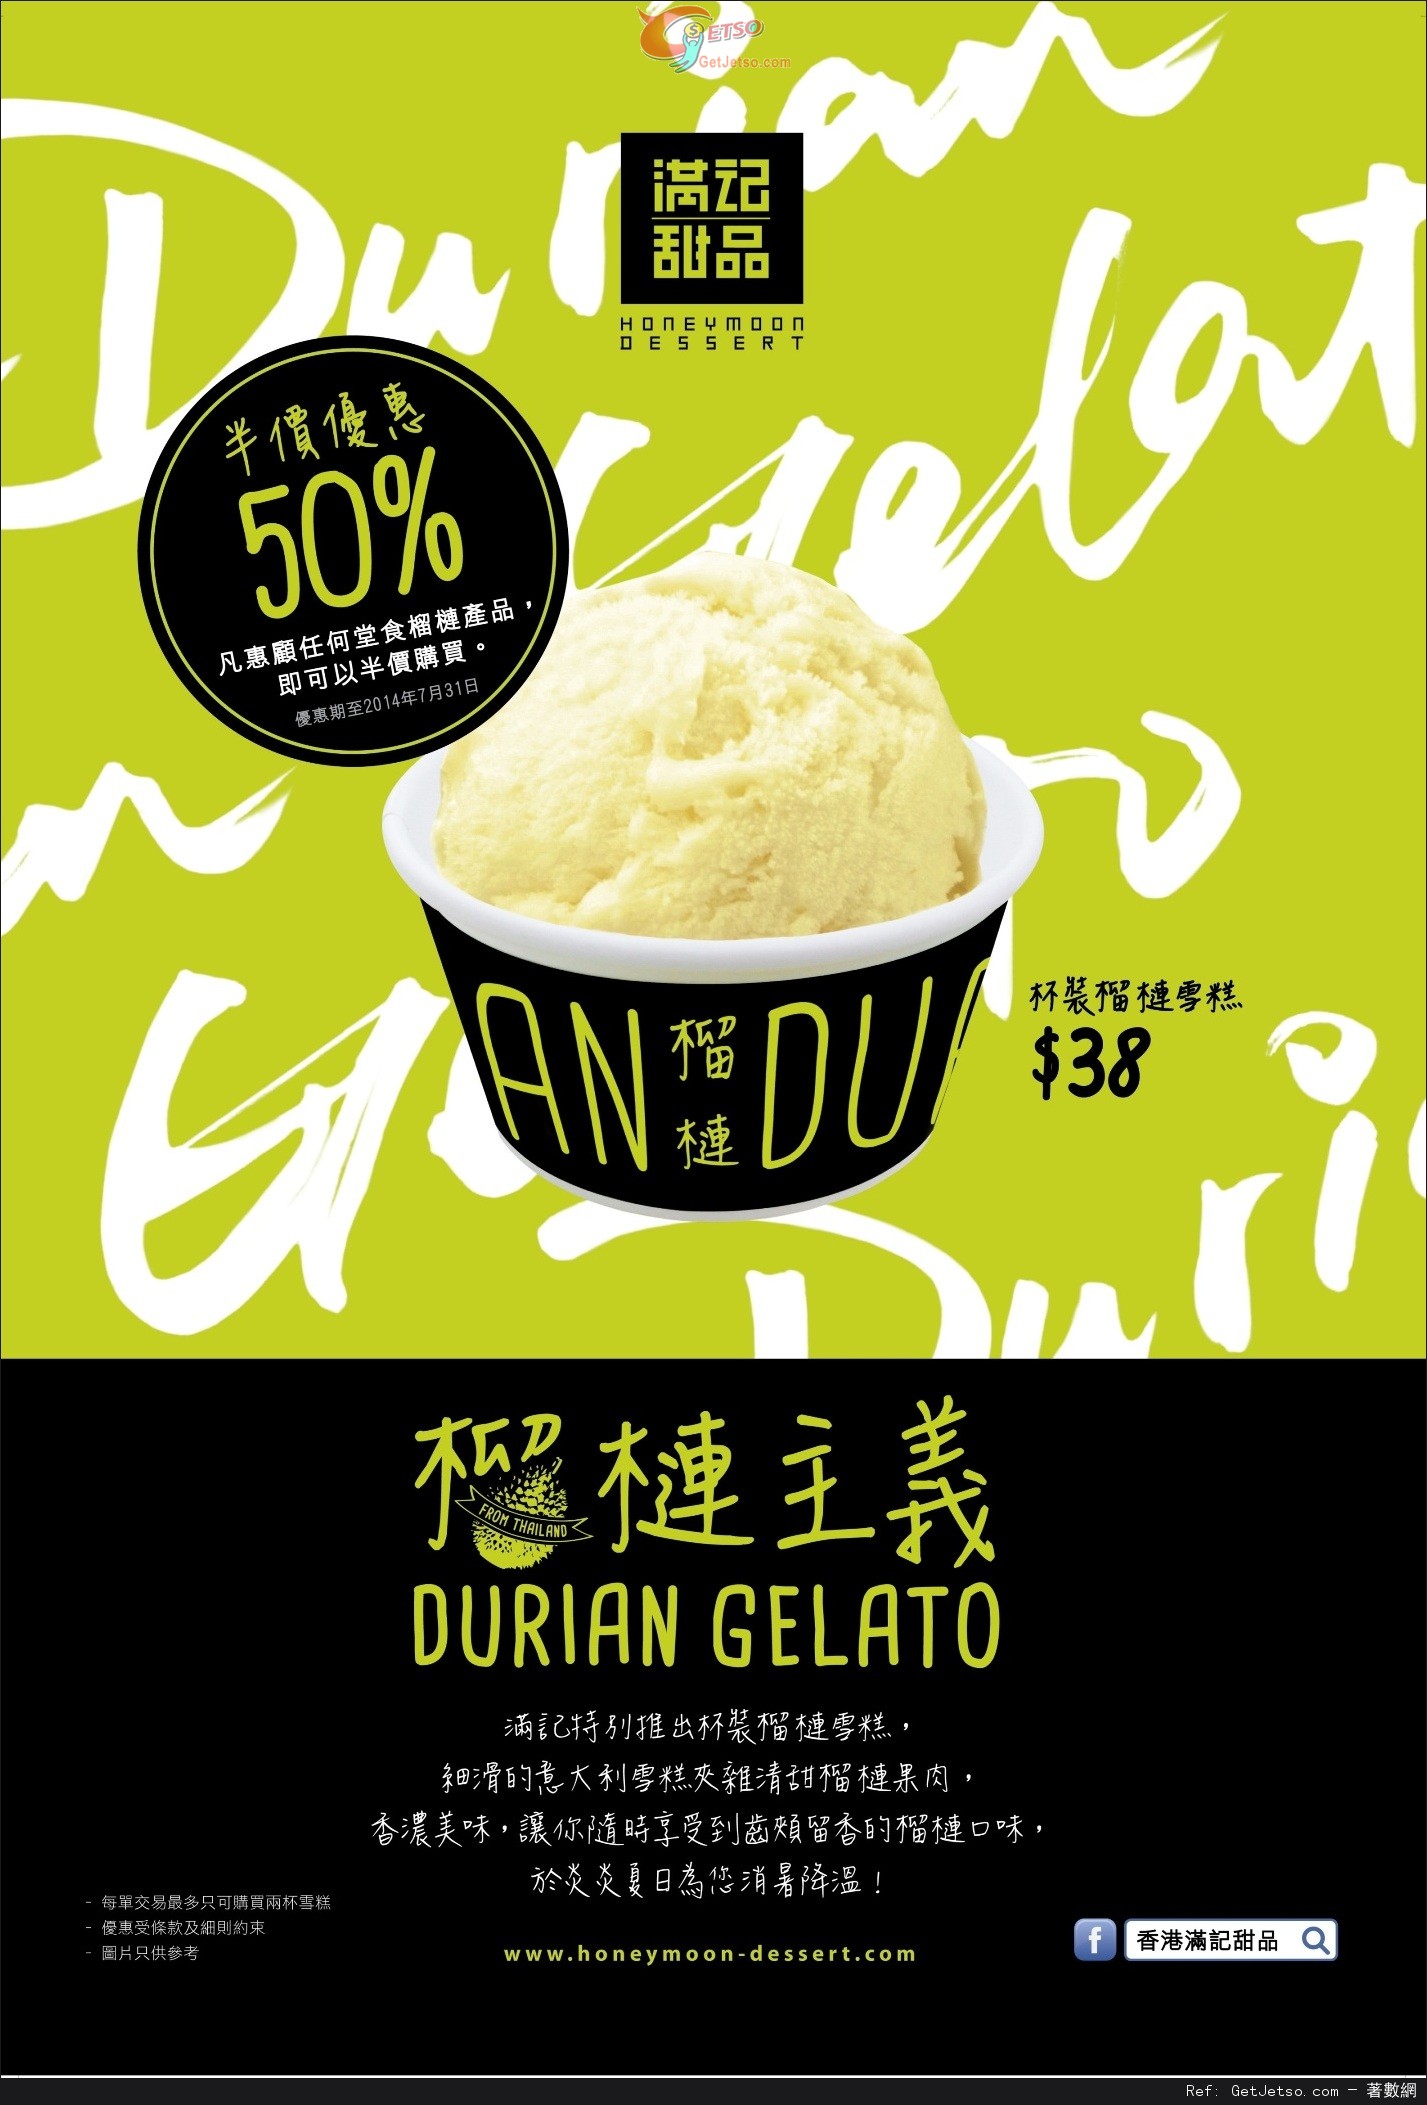 滿記甜品榴槤新主義「杯裝榴槤Gelato」半價換購優惠(至14年7月31日)圖片1